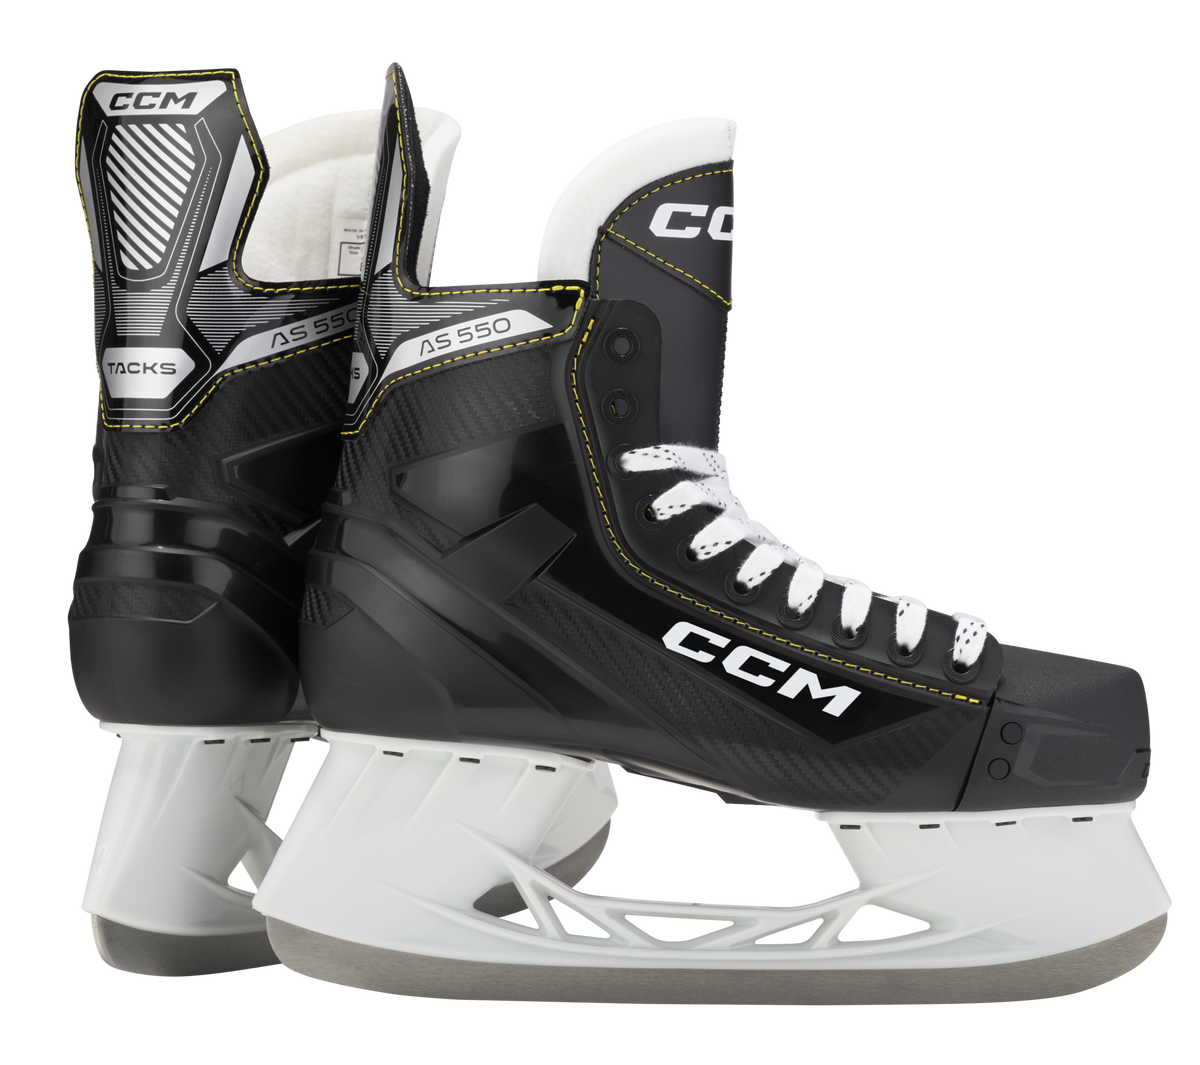 CCM Tacks AS-550 patins de hockey senior